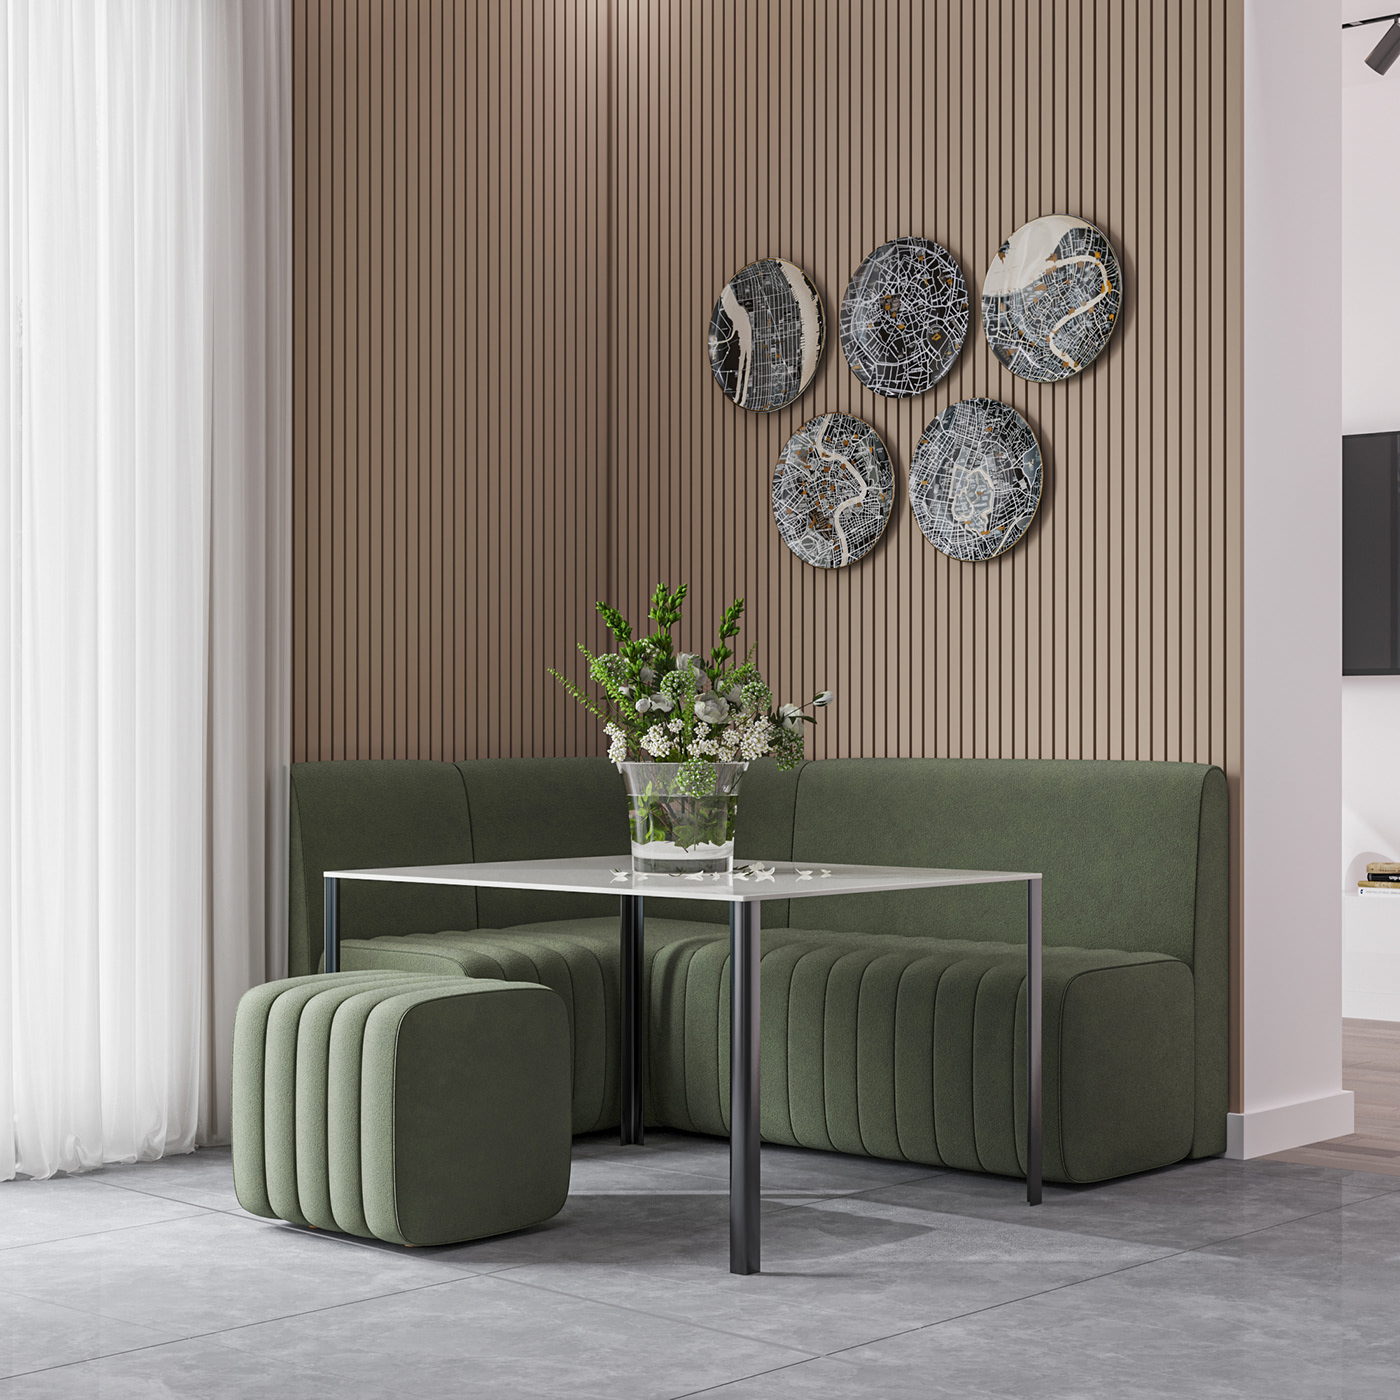 brend design interior design  kitchen minimal modern sofa Soft corner